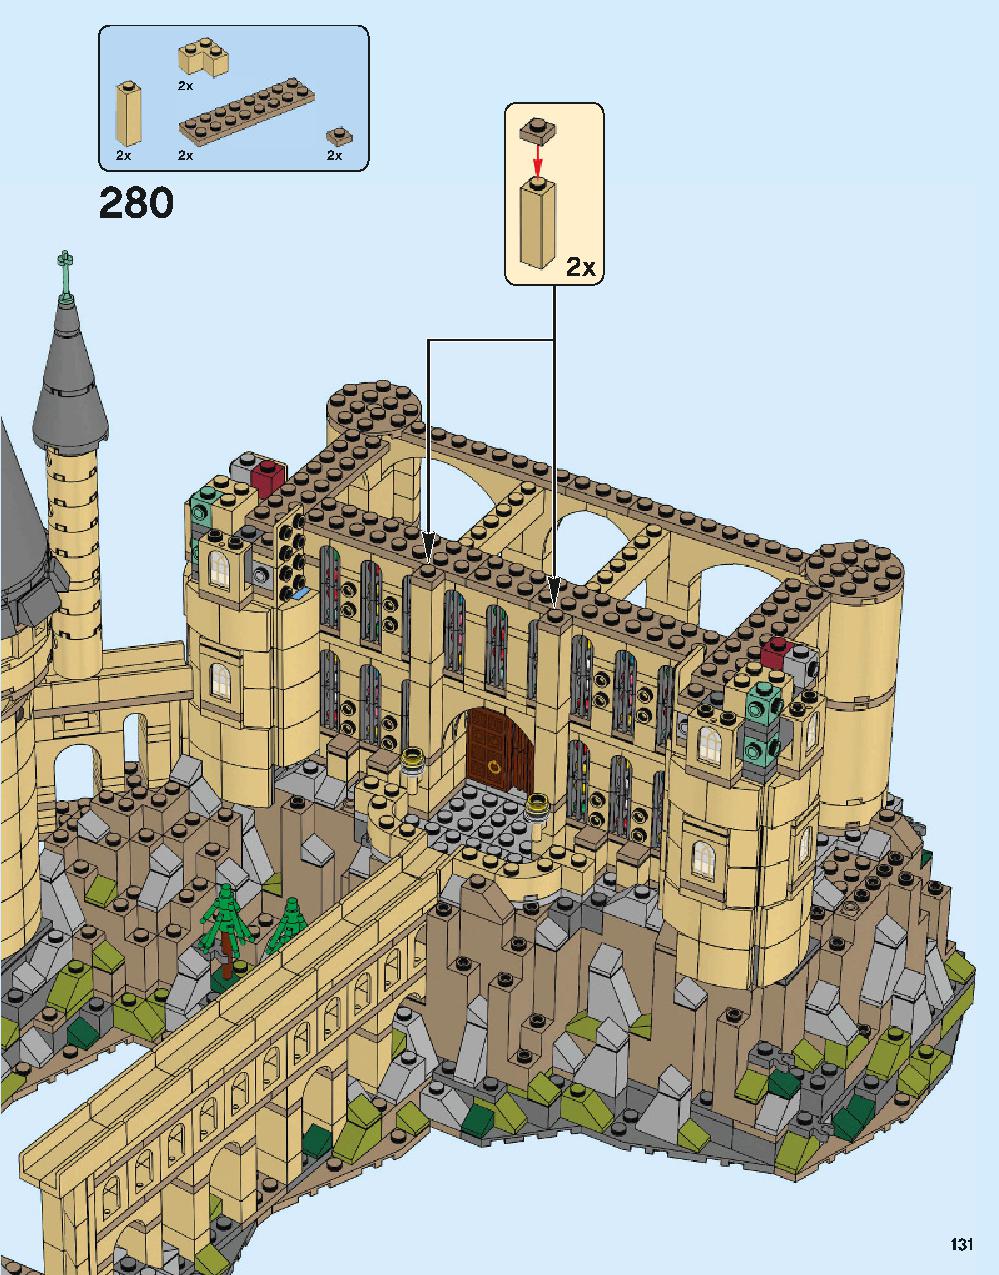 ホグワーツ城 71043 レゴの商品情報 レゴの説明書・組立方法 131 page